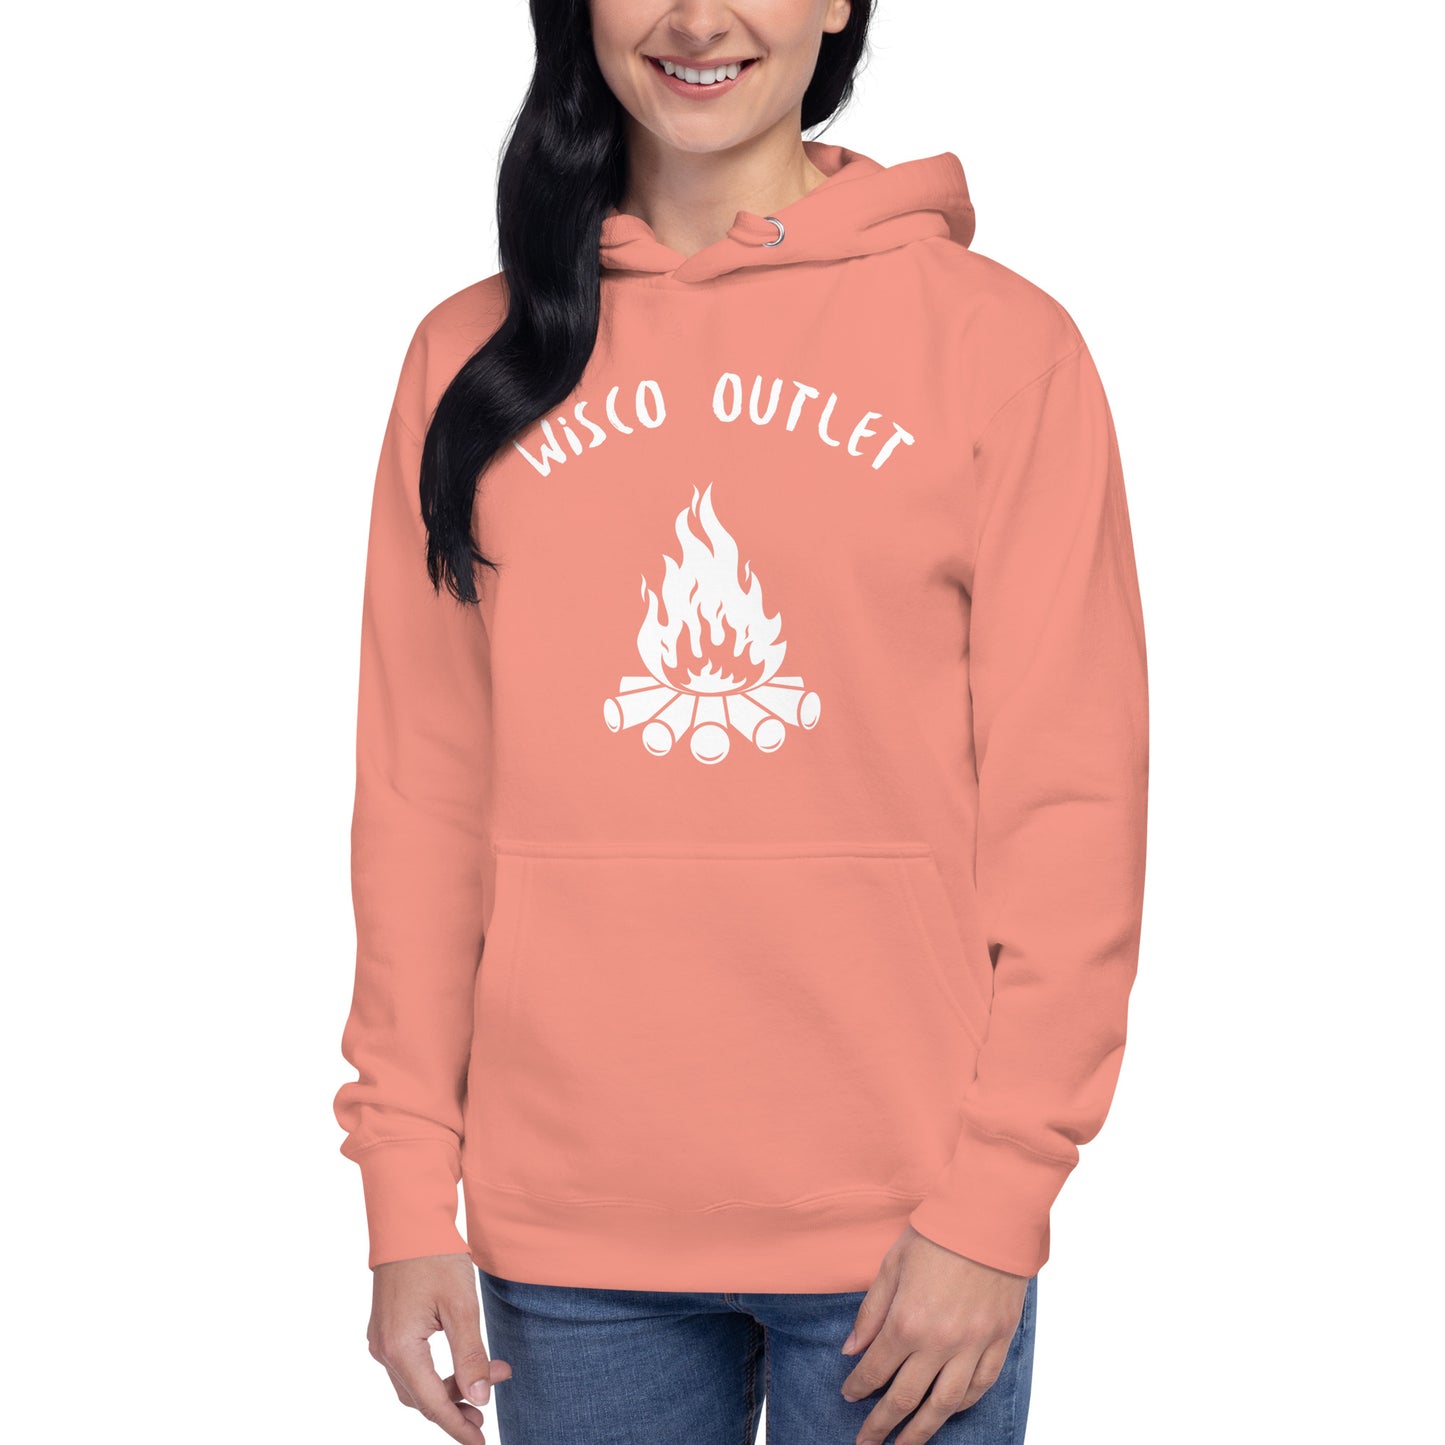 Wisco Outlet Fire Sweatshirt